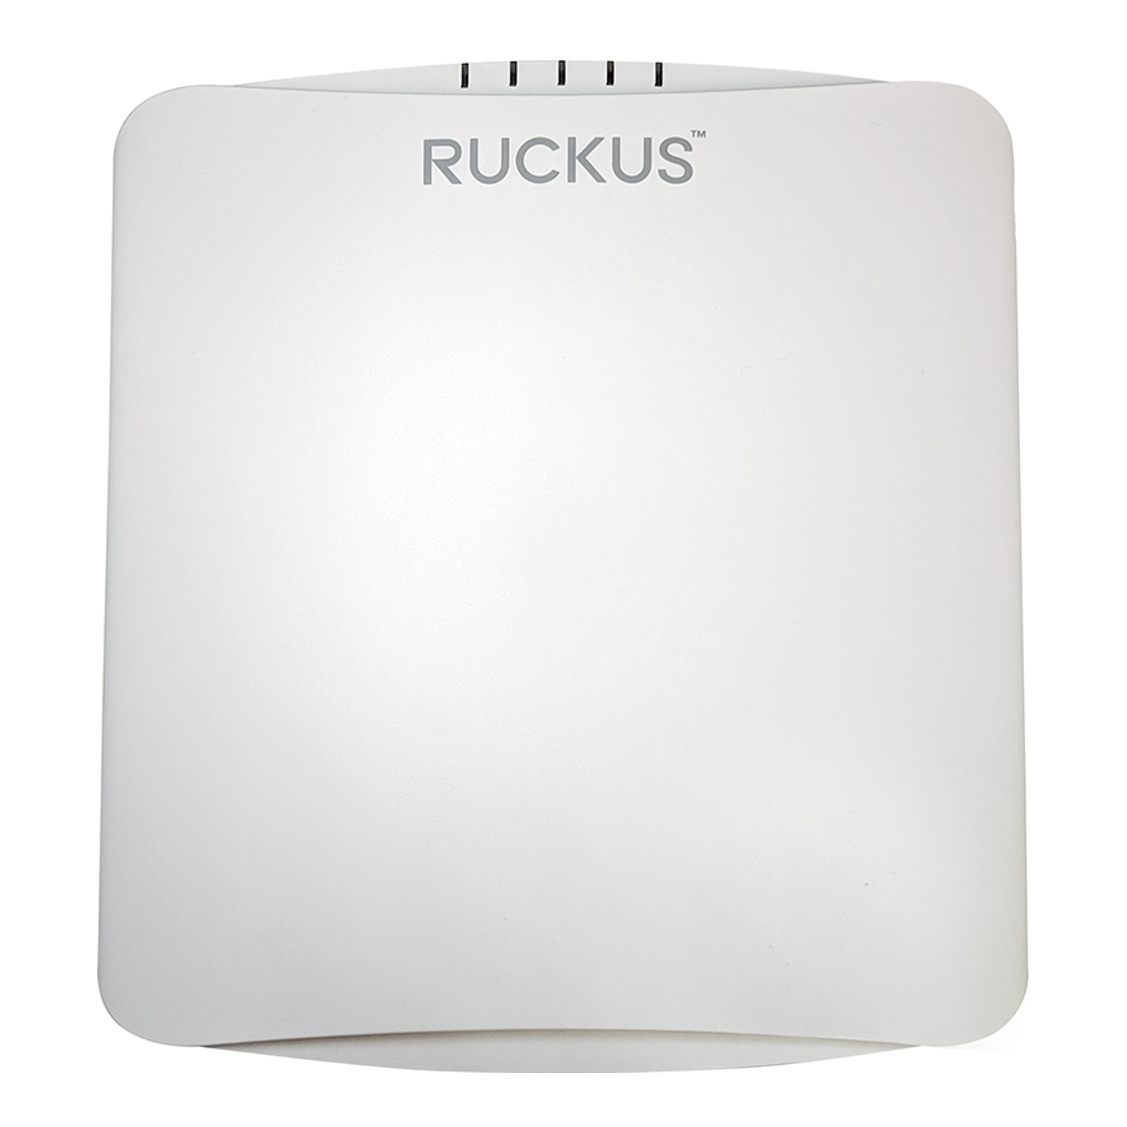 Ruckus R750 Indoor Access Point